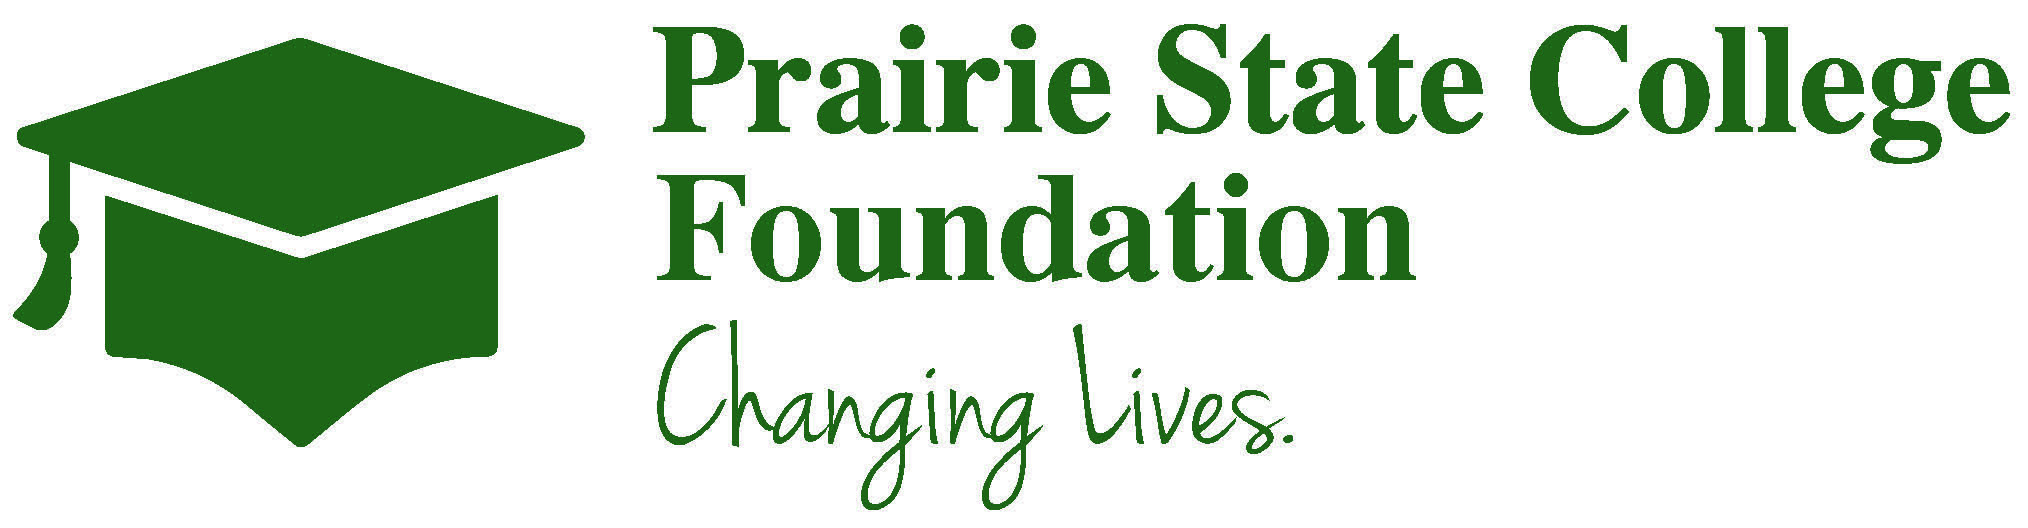 Prairie State College Foundation logo